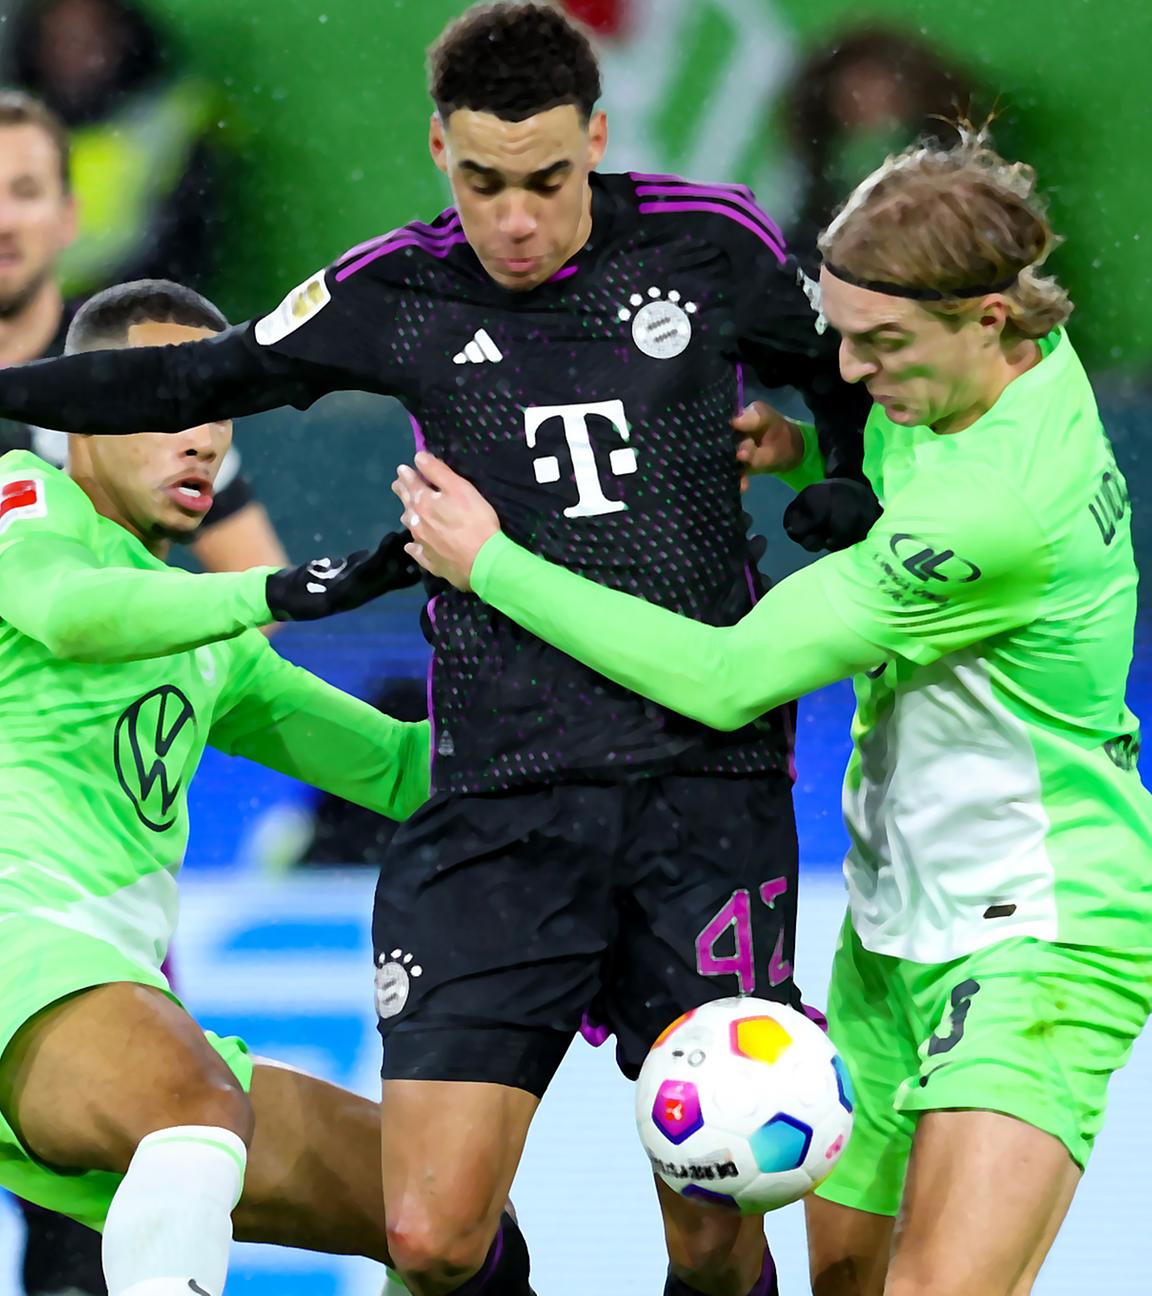 Bayern Münchens deutscher Mittelfeldspieler #42 Jamal Musiala (C), Wolfsburgs belgischer Verteidiger #03 Sebastiaan Bornauw (R) und Wolfsburgs belgischer Mittelfeldspieler #06 Aster Vranckx (L) kämpfen um den Ball.